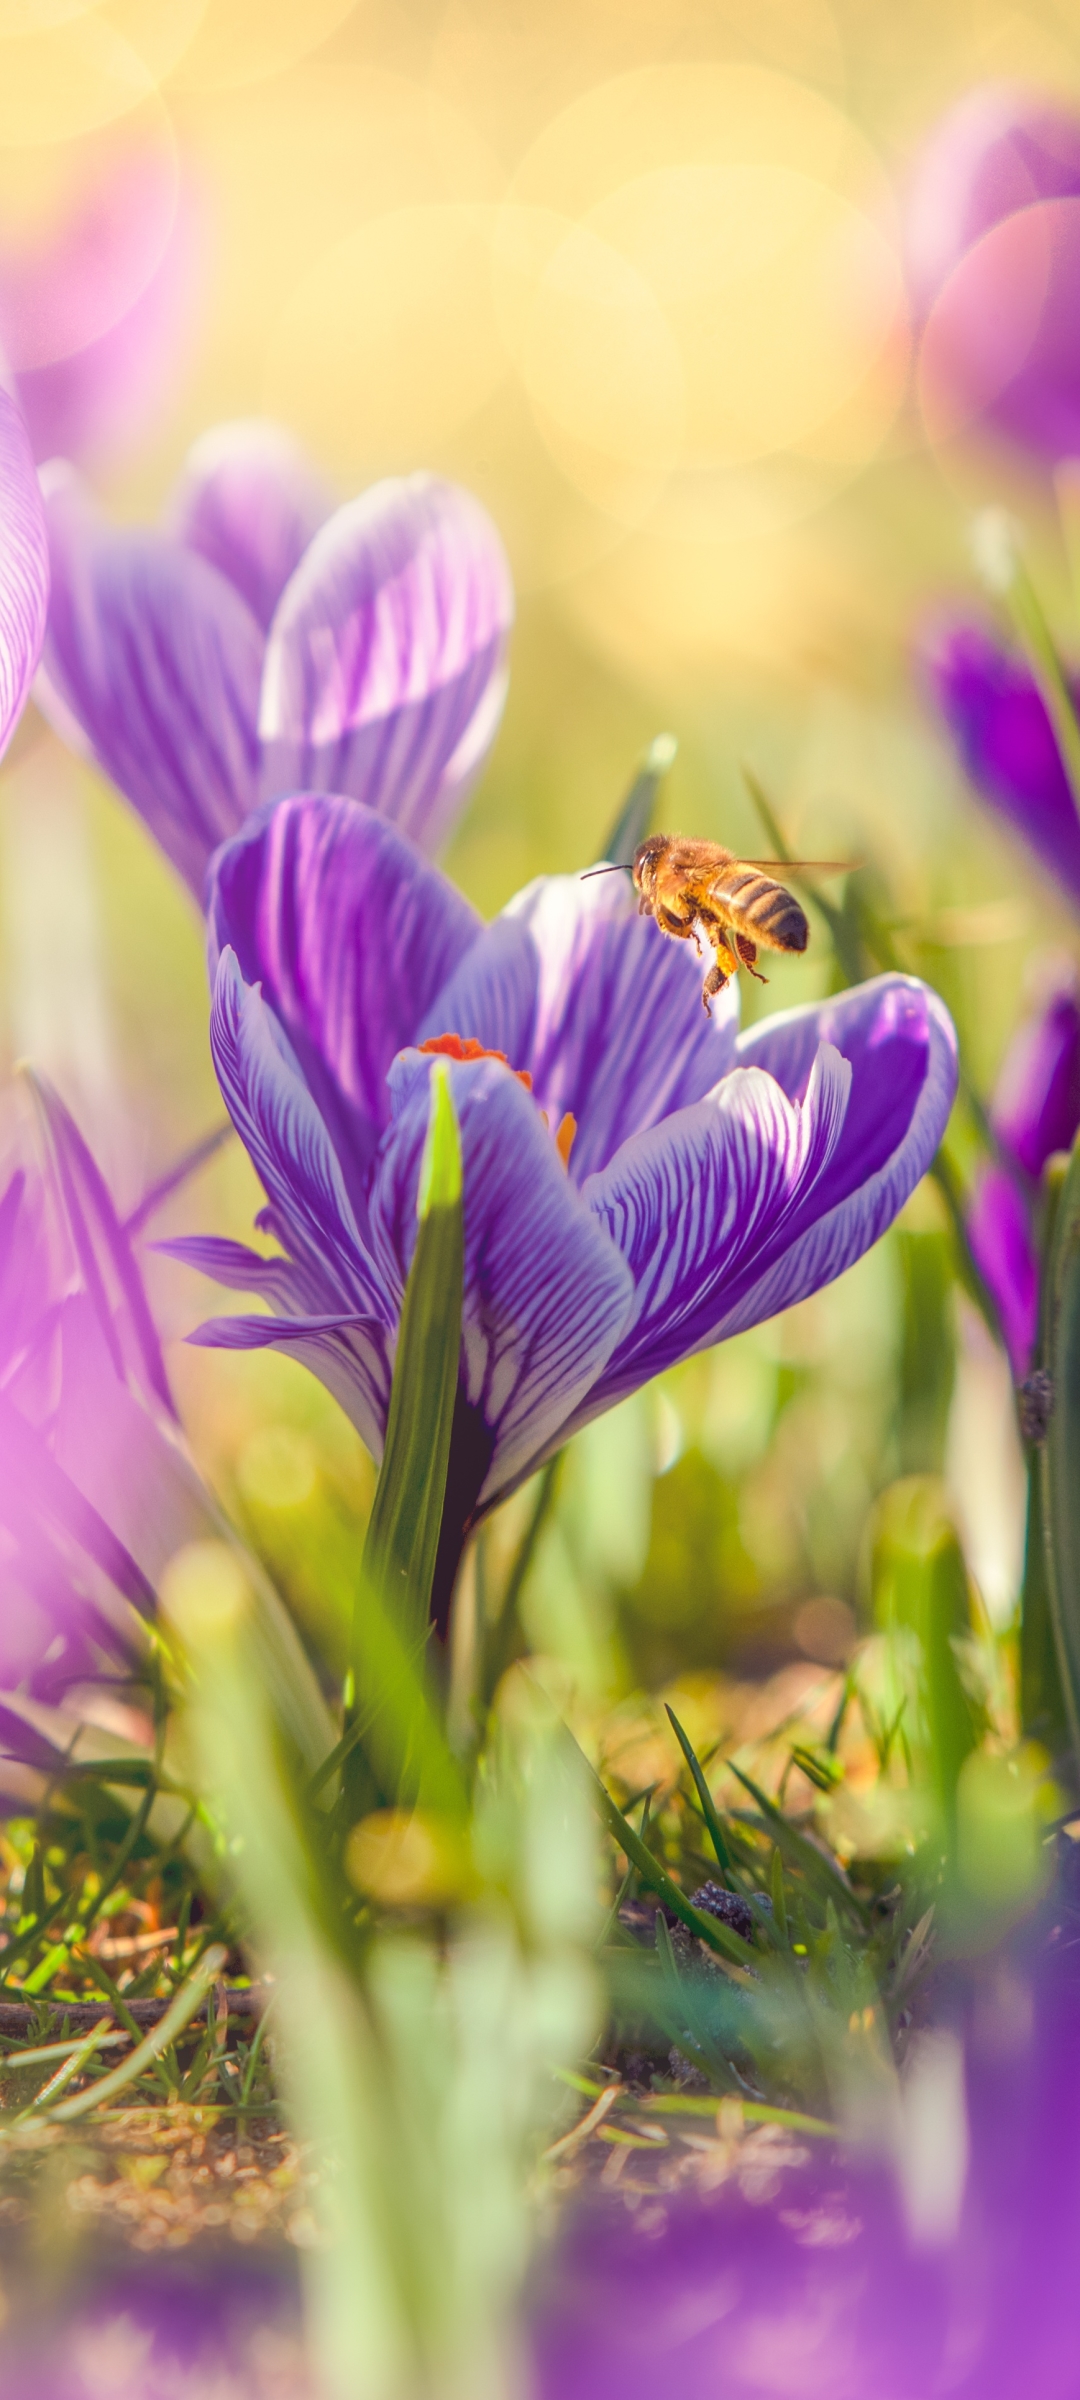 Descarga gratuita de fondo de pantalla para móvil de Animales, Insectos, Flor, Macro, Insecto, Abeja, Primavera, Azafrán, Flor Purpura, Macrofotografía.